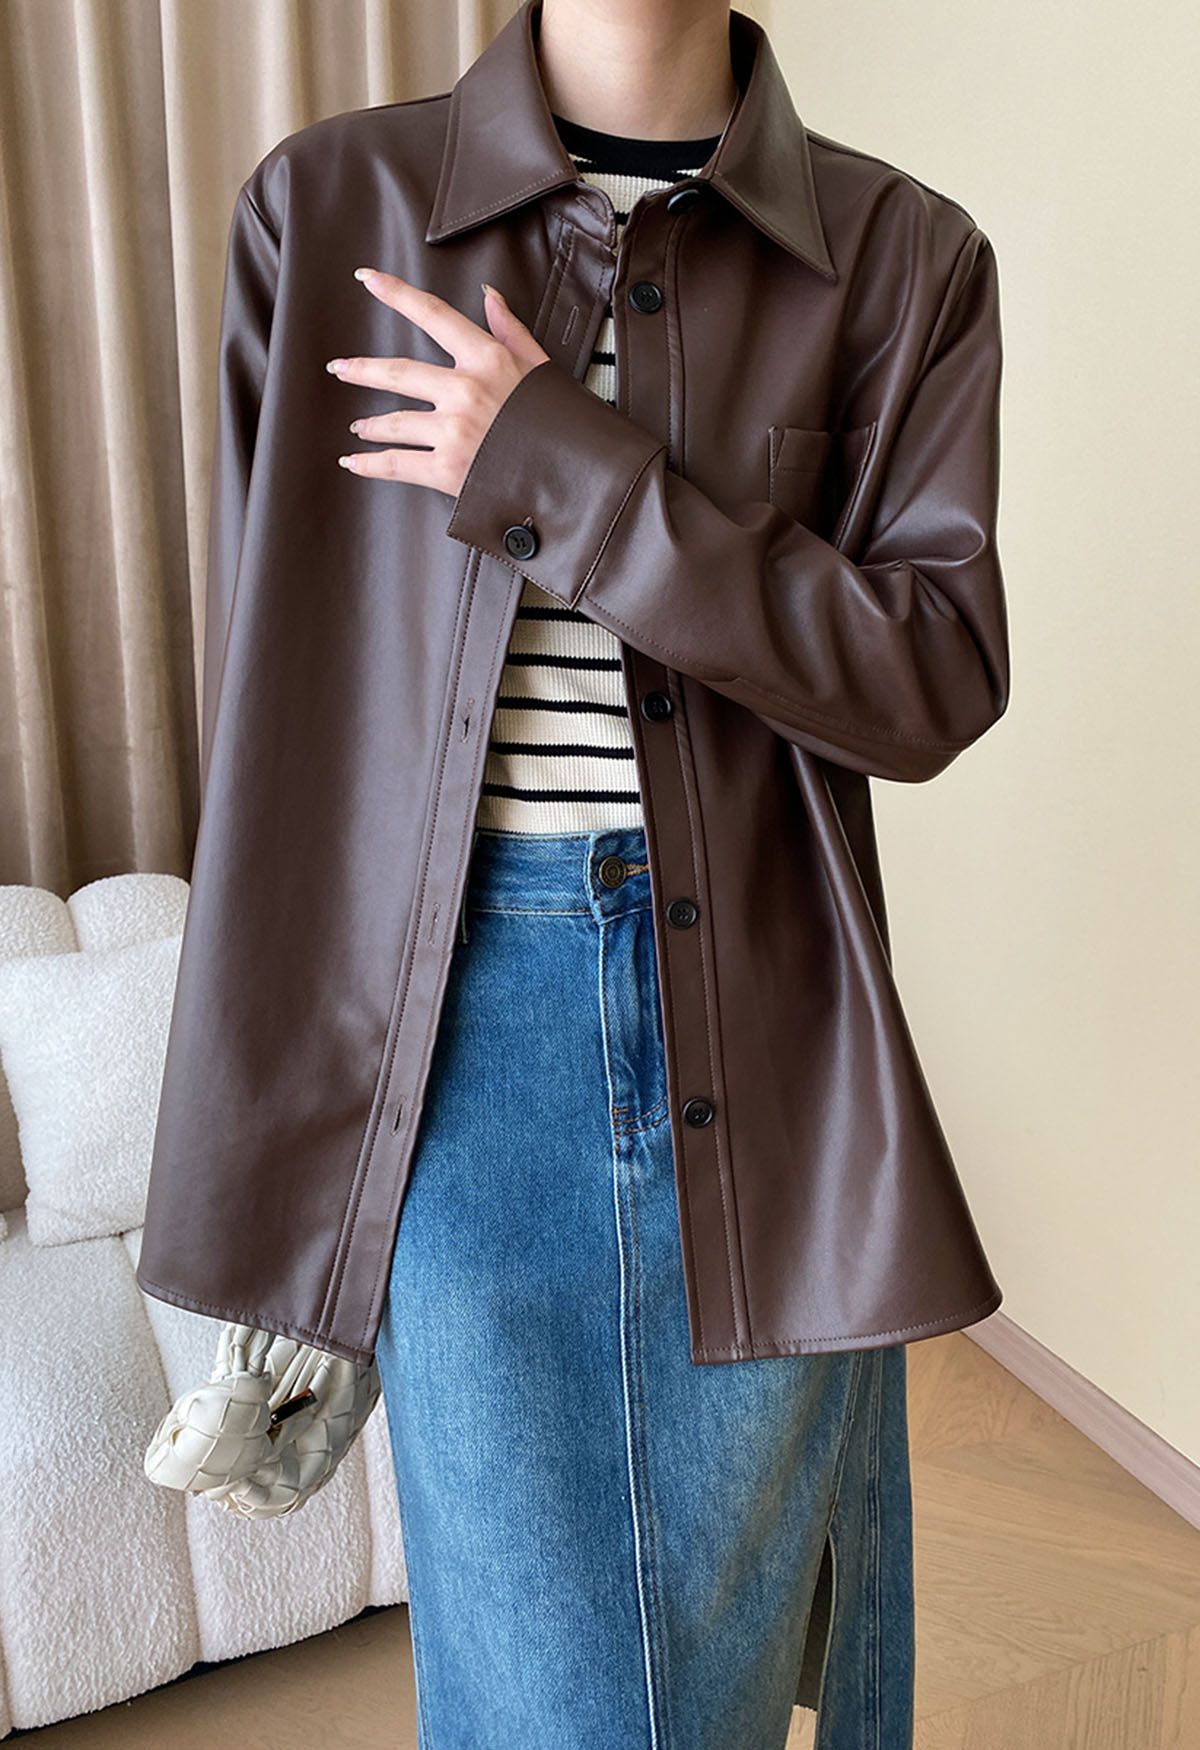 Chaqueta estilo camisa informal elegante de piel sintética en marrón